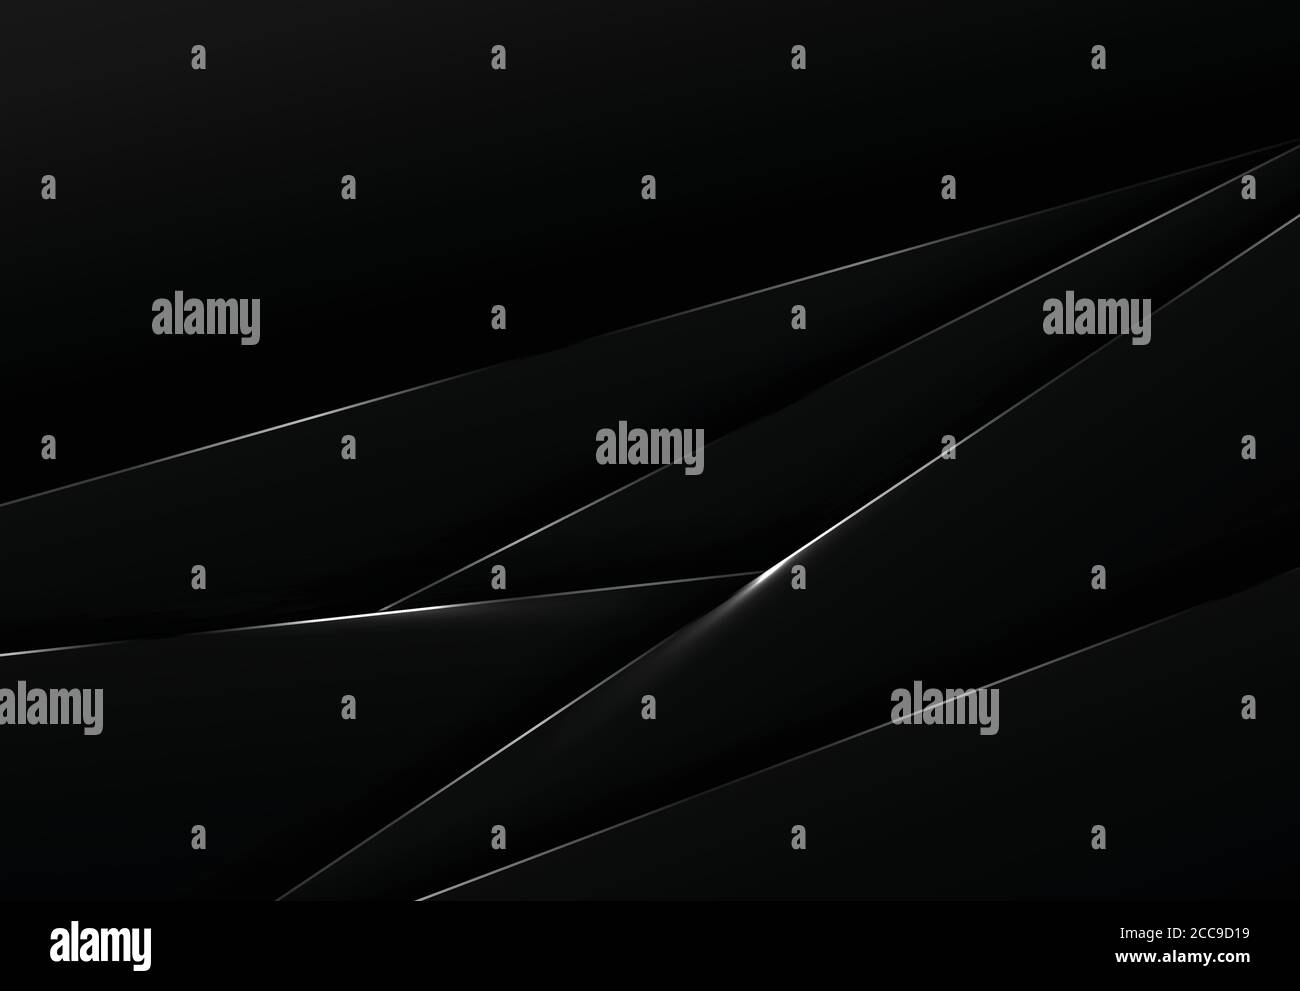 Abstrakte schwarze Tech-Vorlage Design von über Lapmuster Hintergrund. Verwenden Sie für Anzeige, Poster, Kunstwerk, Template-Design. Illustration Vektor eps10 Stock Vektor